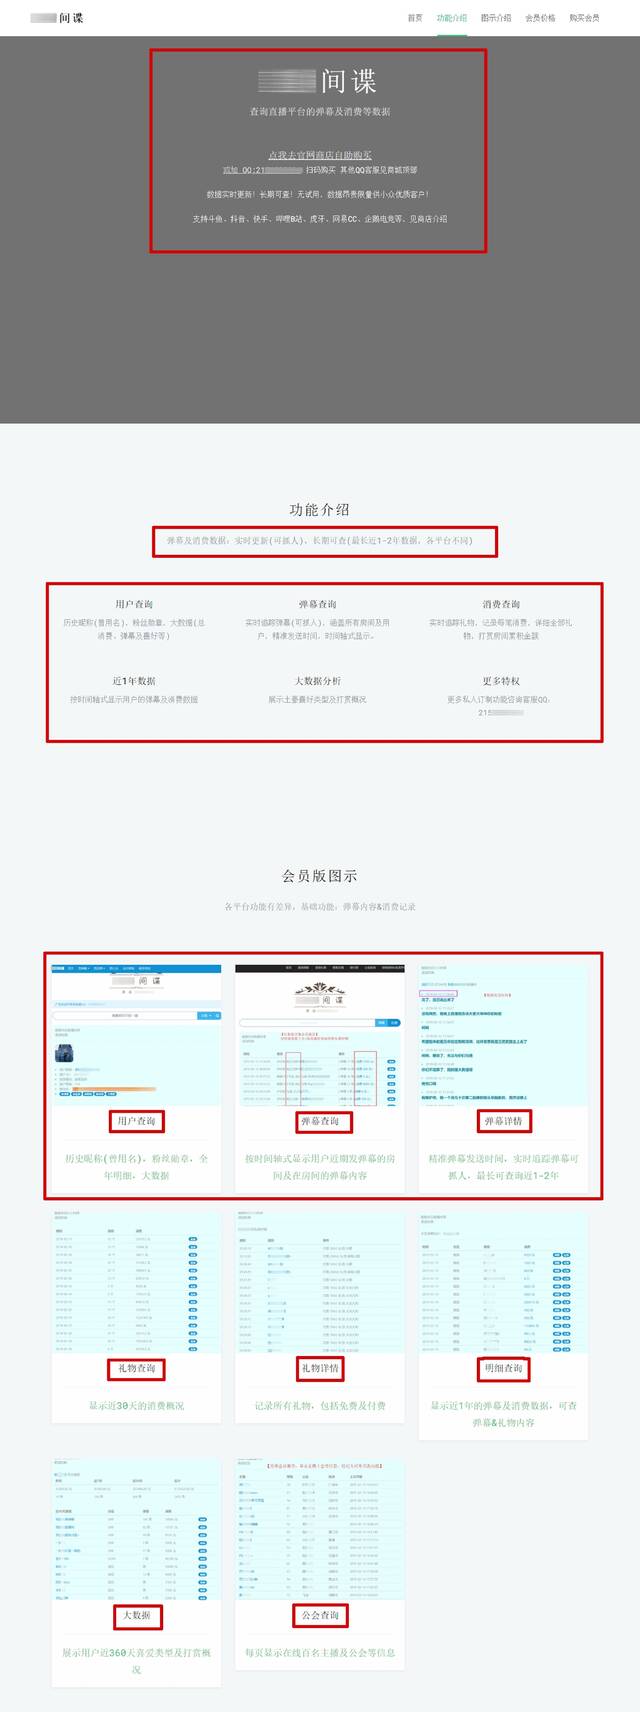 非法获取数据的网站网页截图。上海市公安局供图